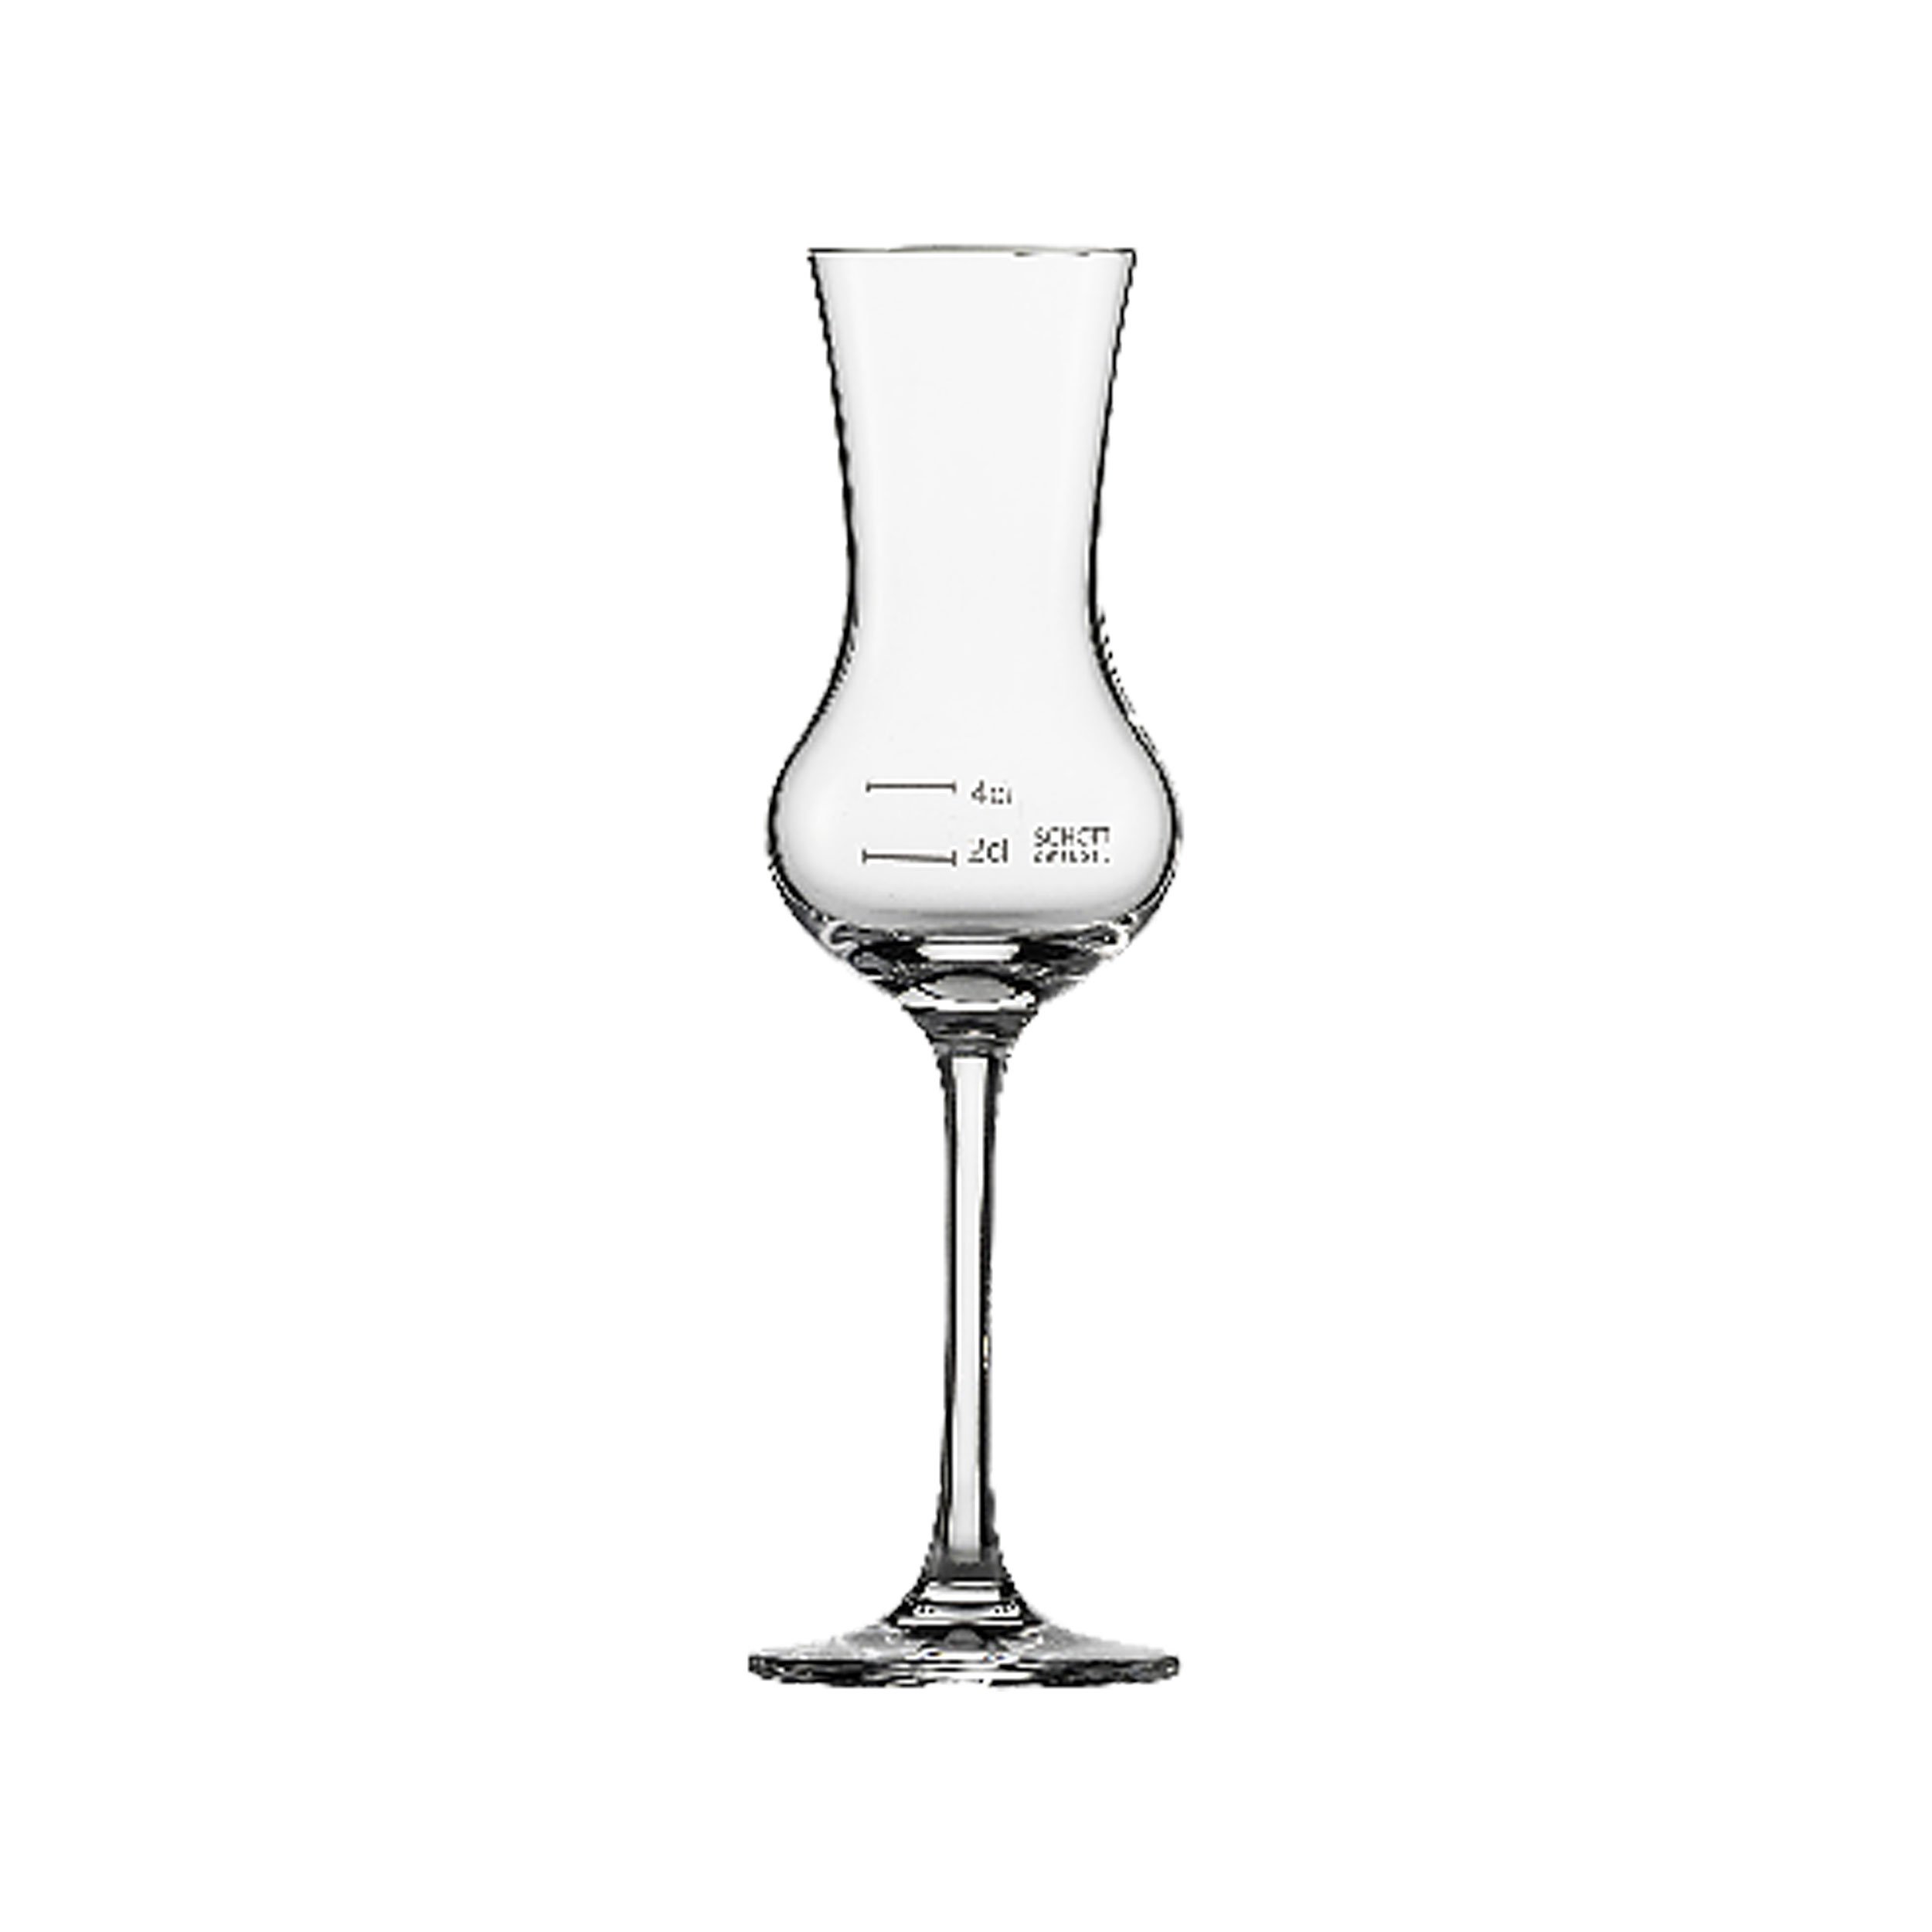 Schott Zwiesel Grappaglas, Glas, transparent, 20 x 14 x 20.1 cm, 6-Einheiten